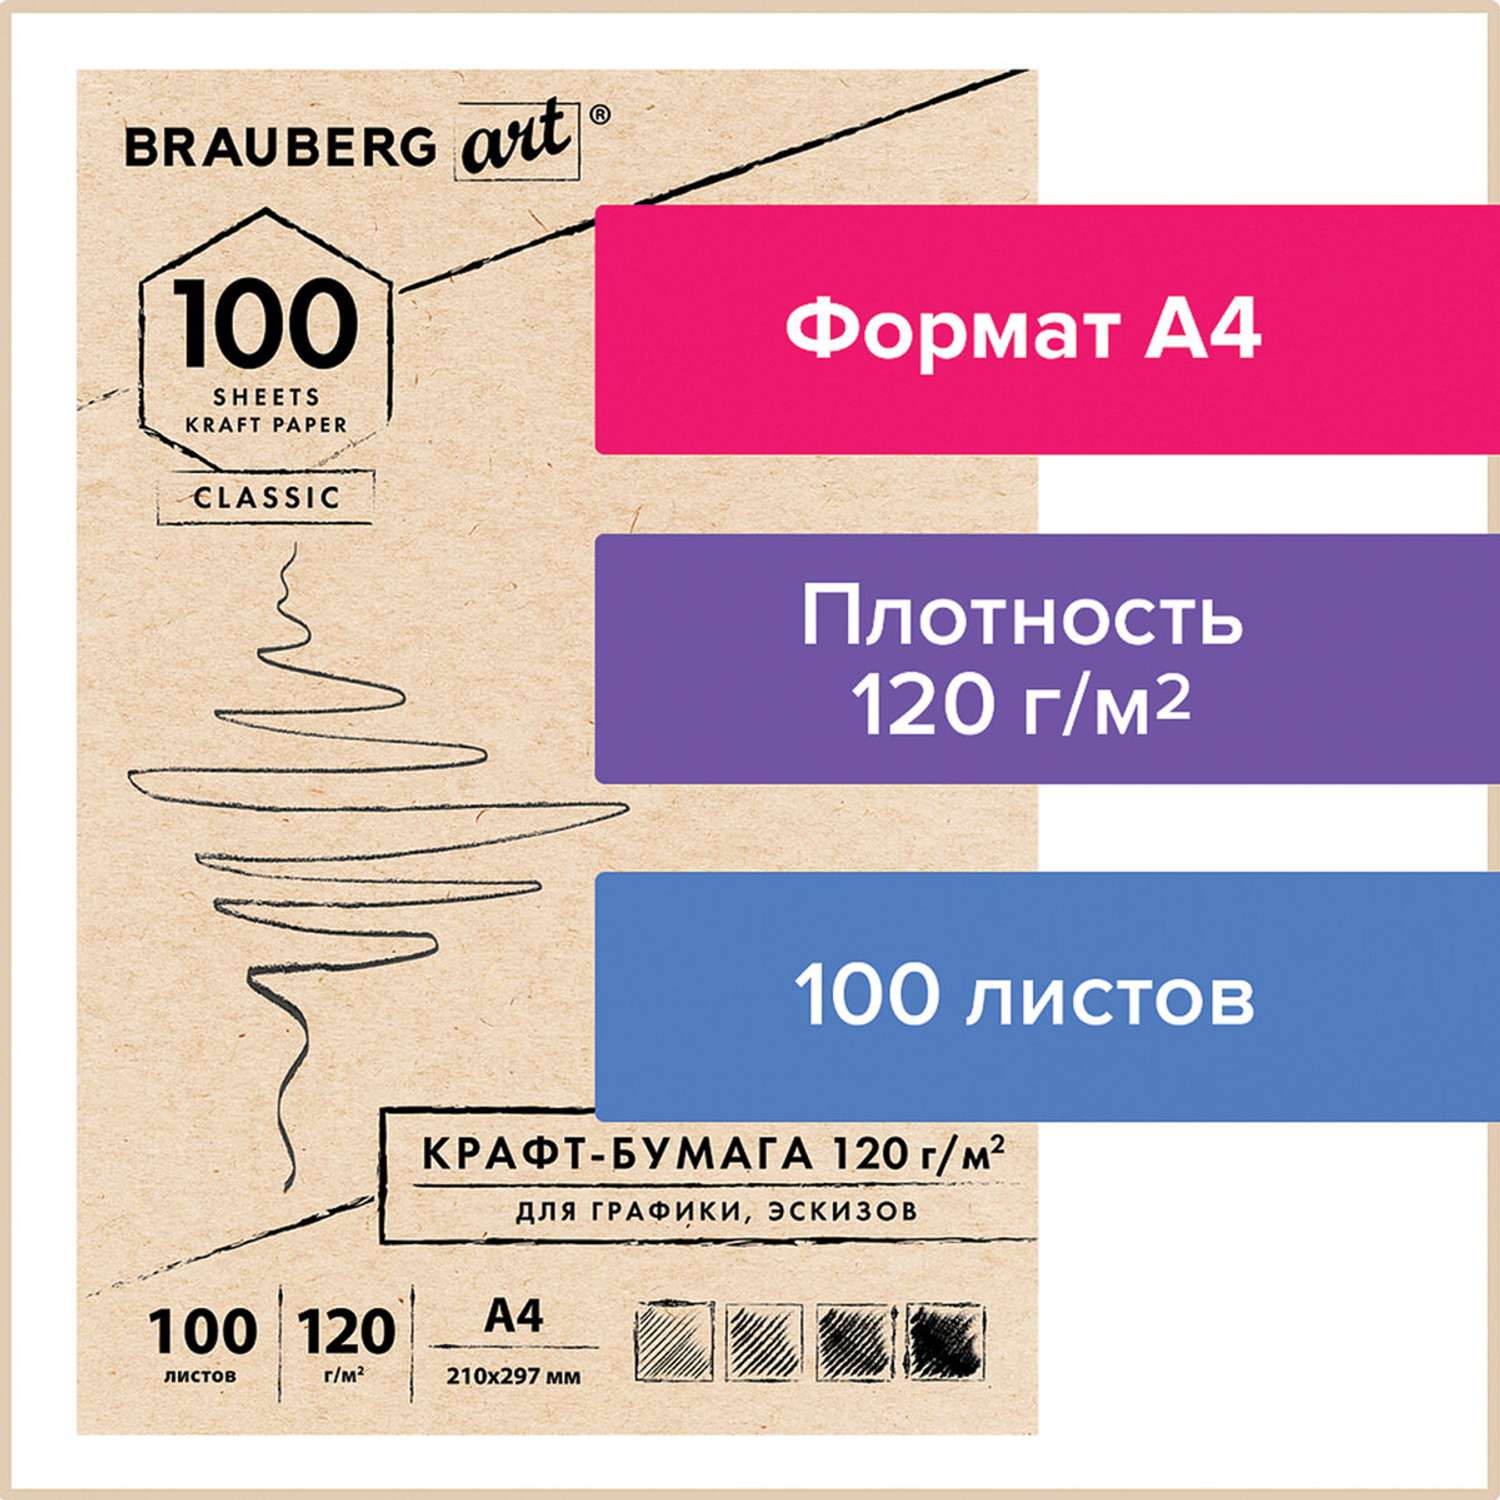 Крафт-бумага для графики Brauberg эскизов А4 100л Art Classic - фото 2